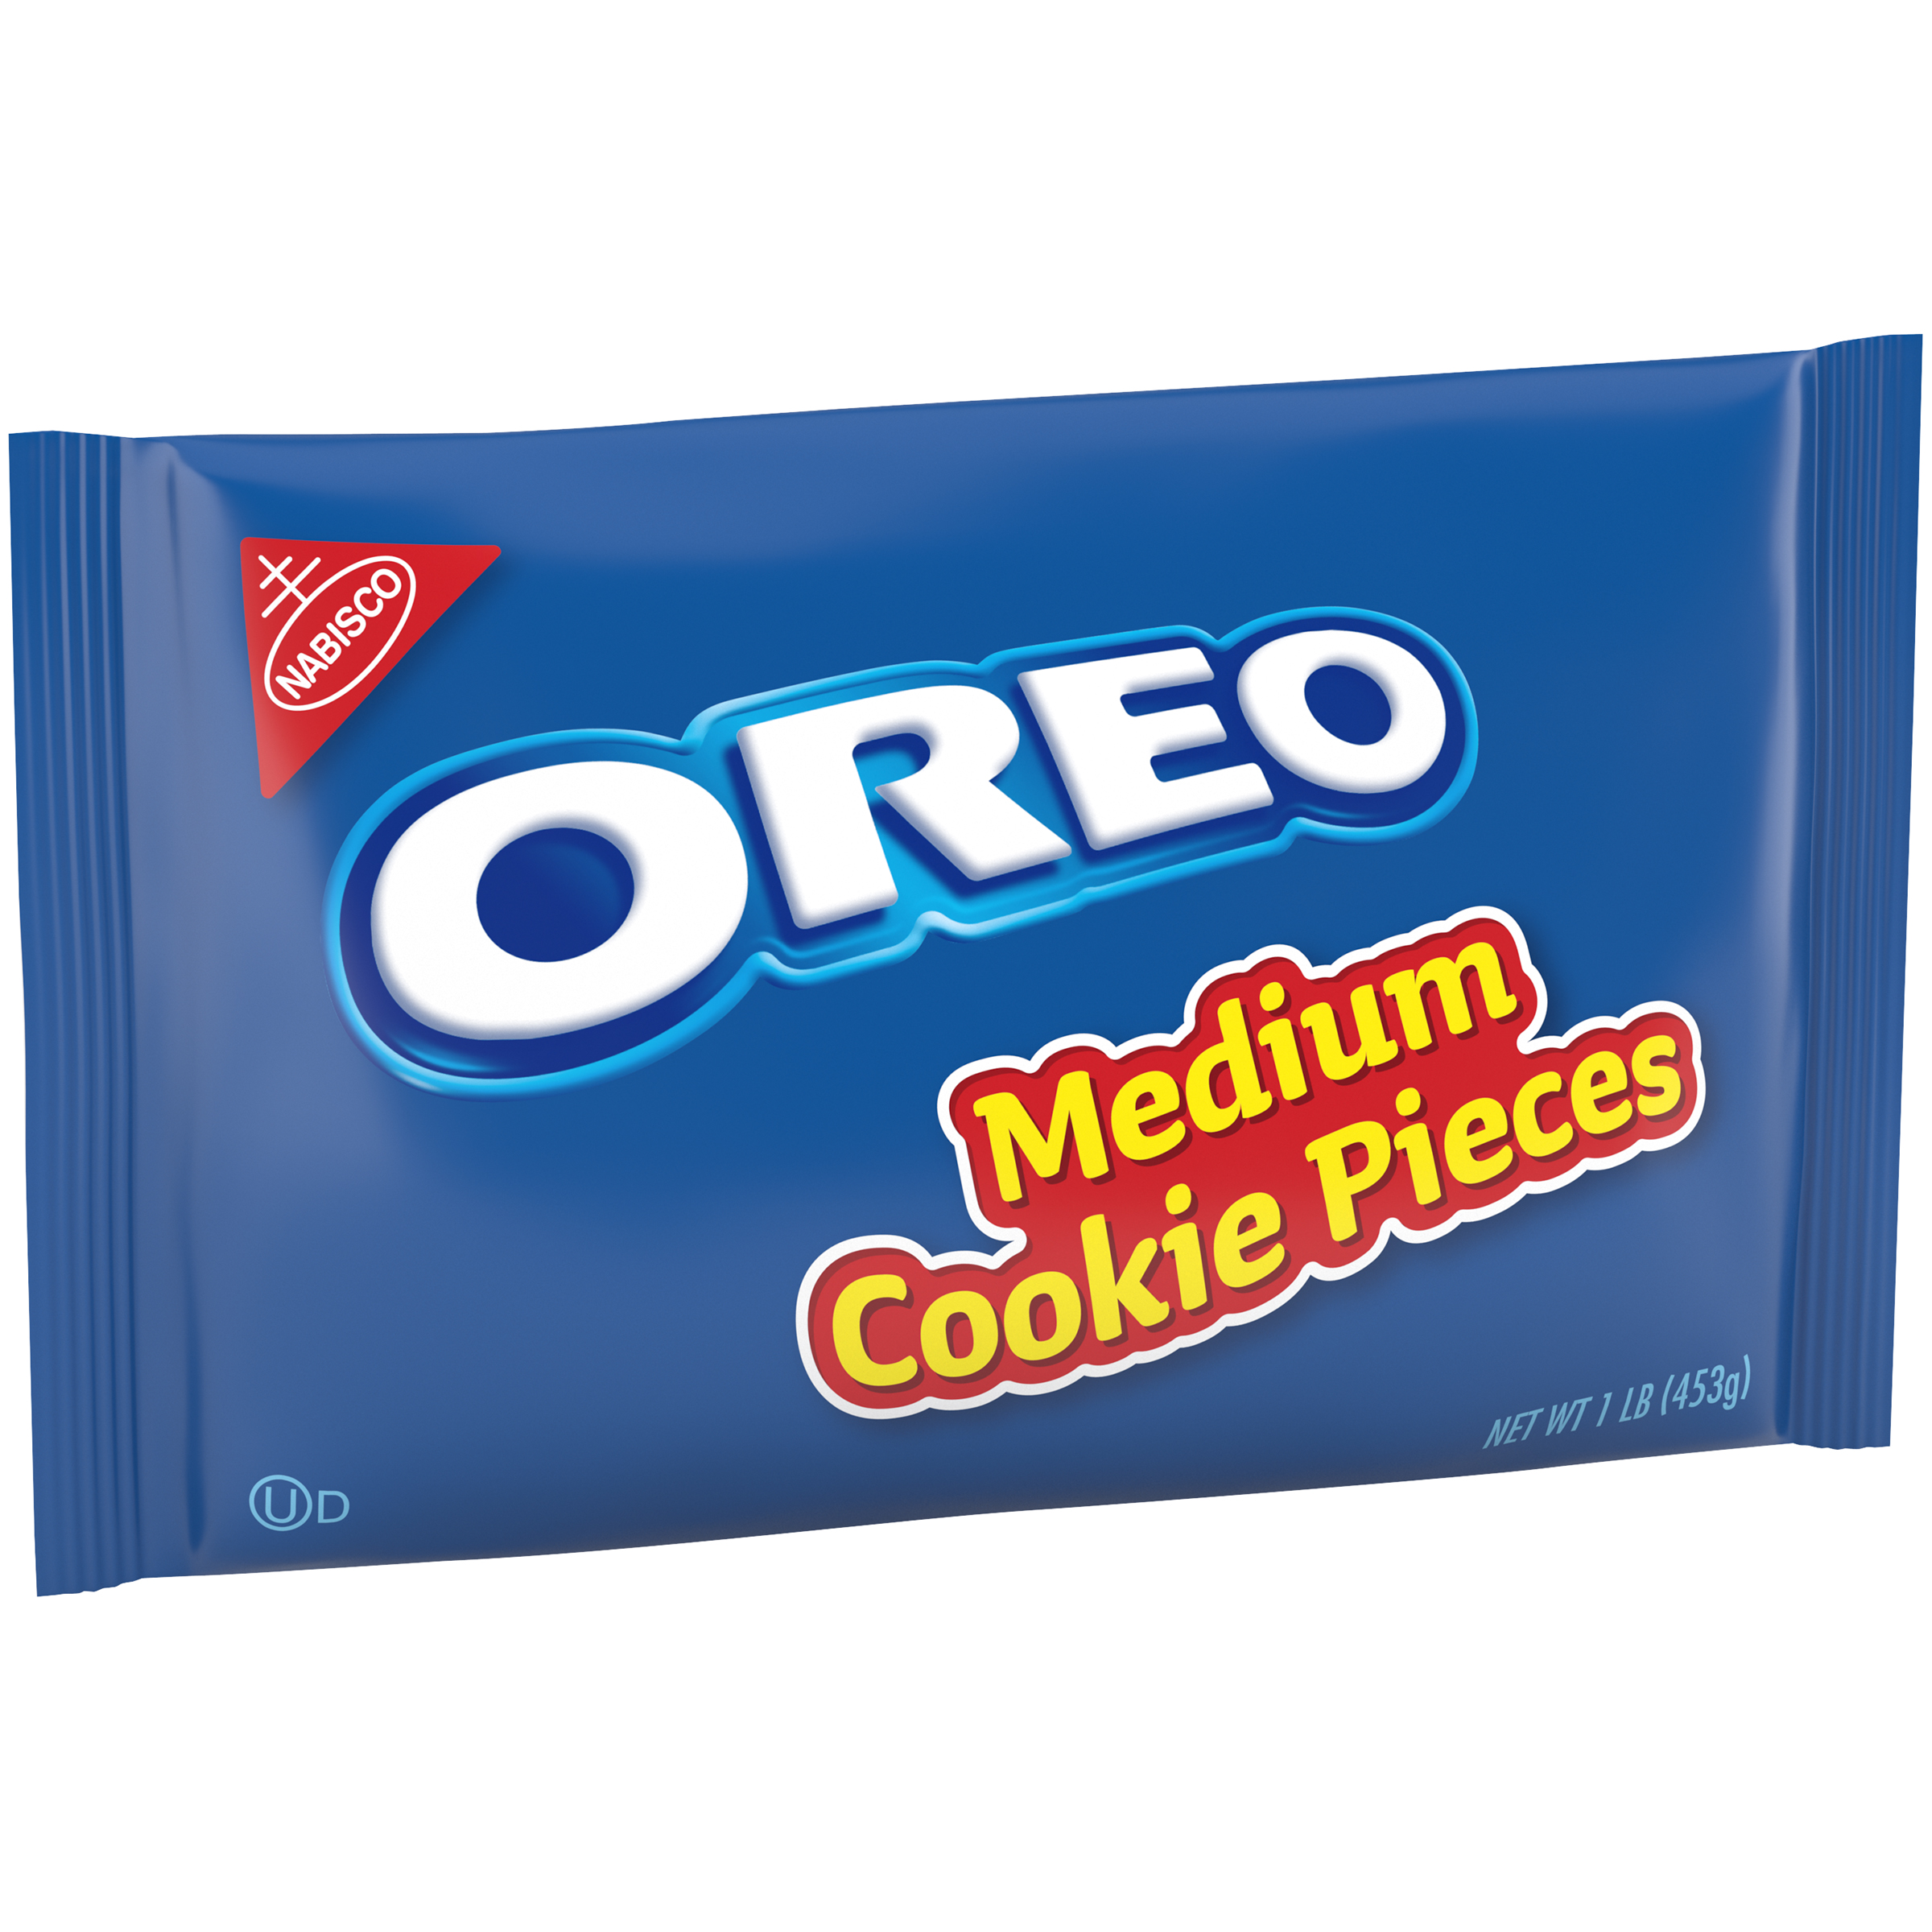 OREO Medium Cookie Pieces 12/1LB